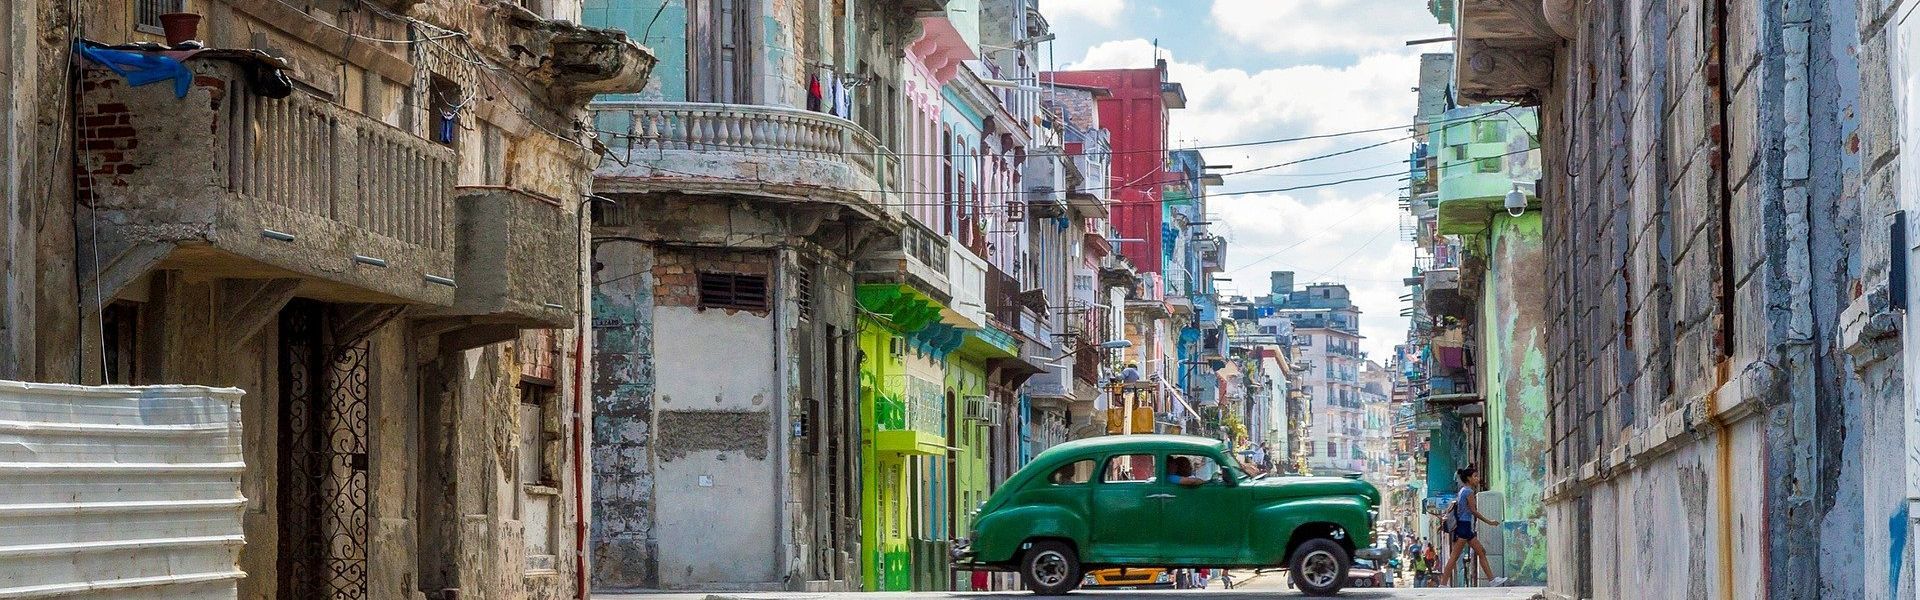 Havana Private Guides Tour Cuba